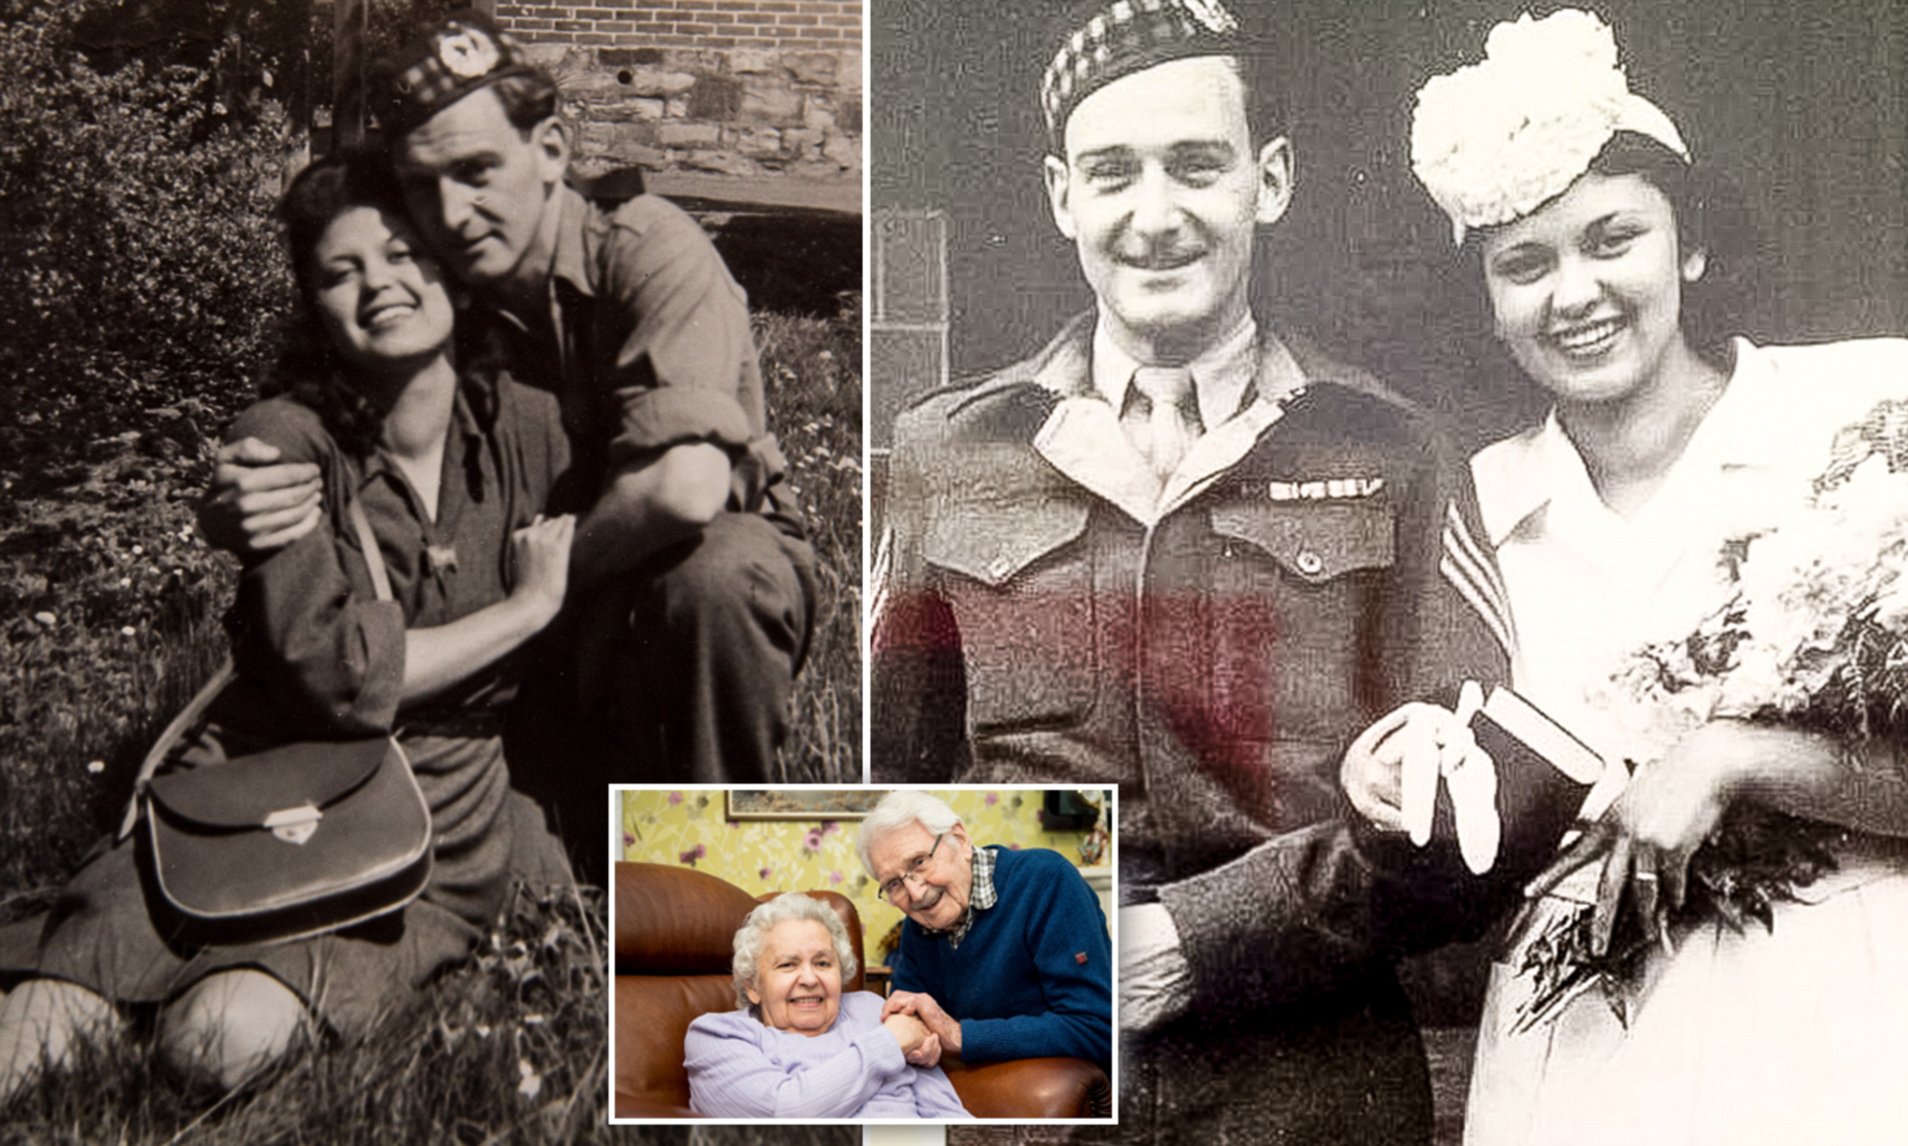 Он освободил ее из «лагеря смерти»: это стало началом истории любви длиной в 70 лет